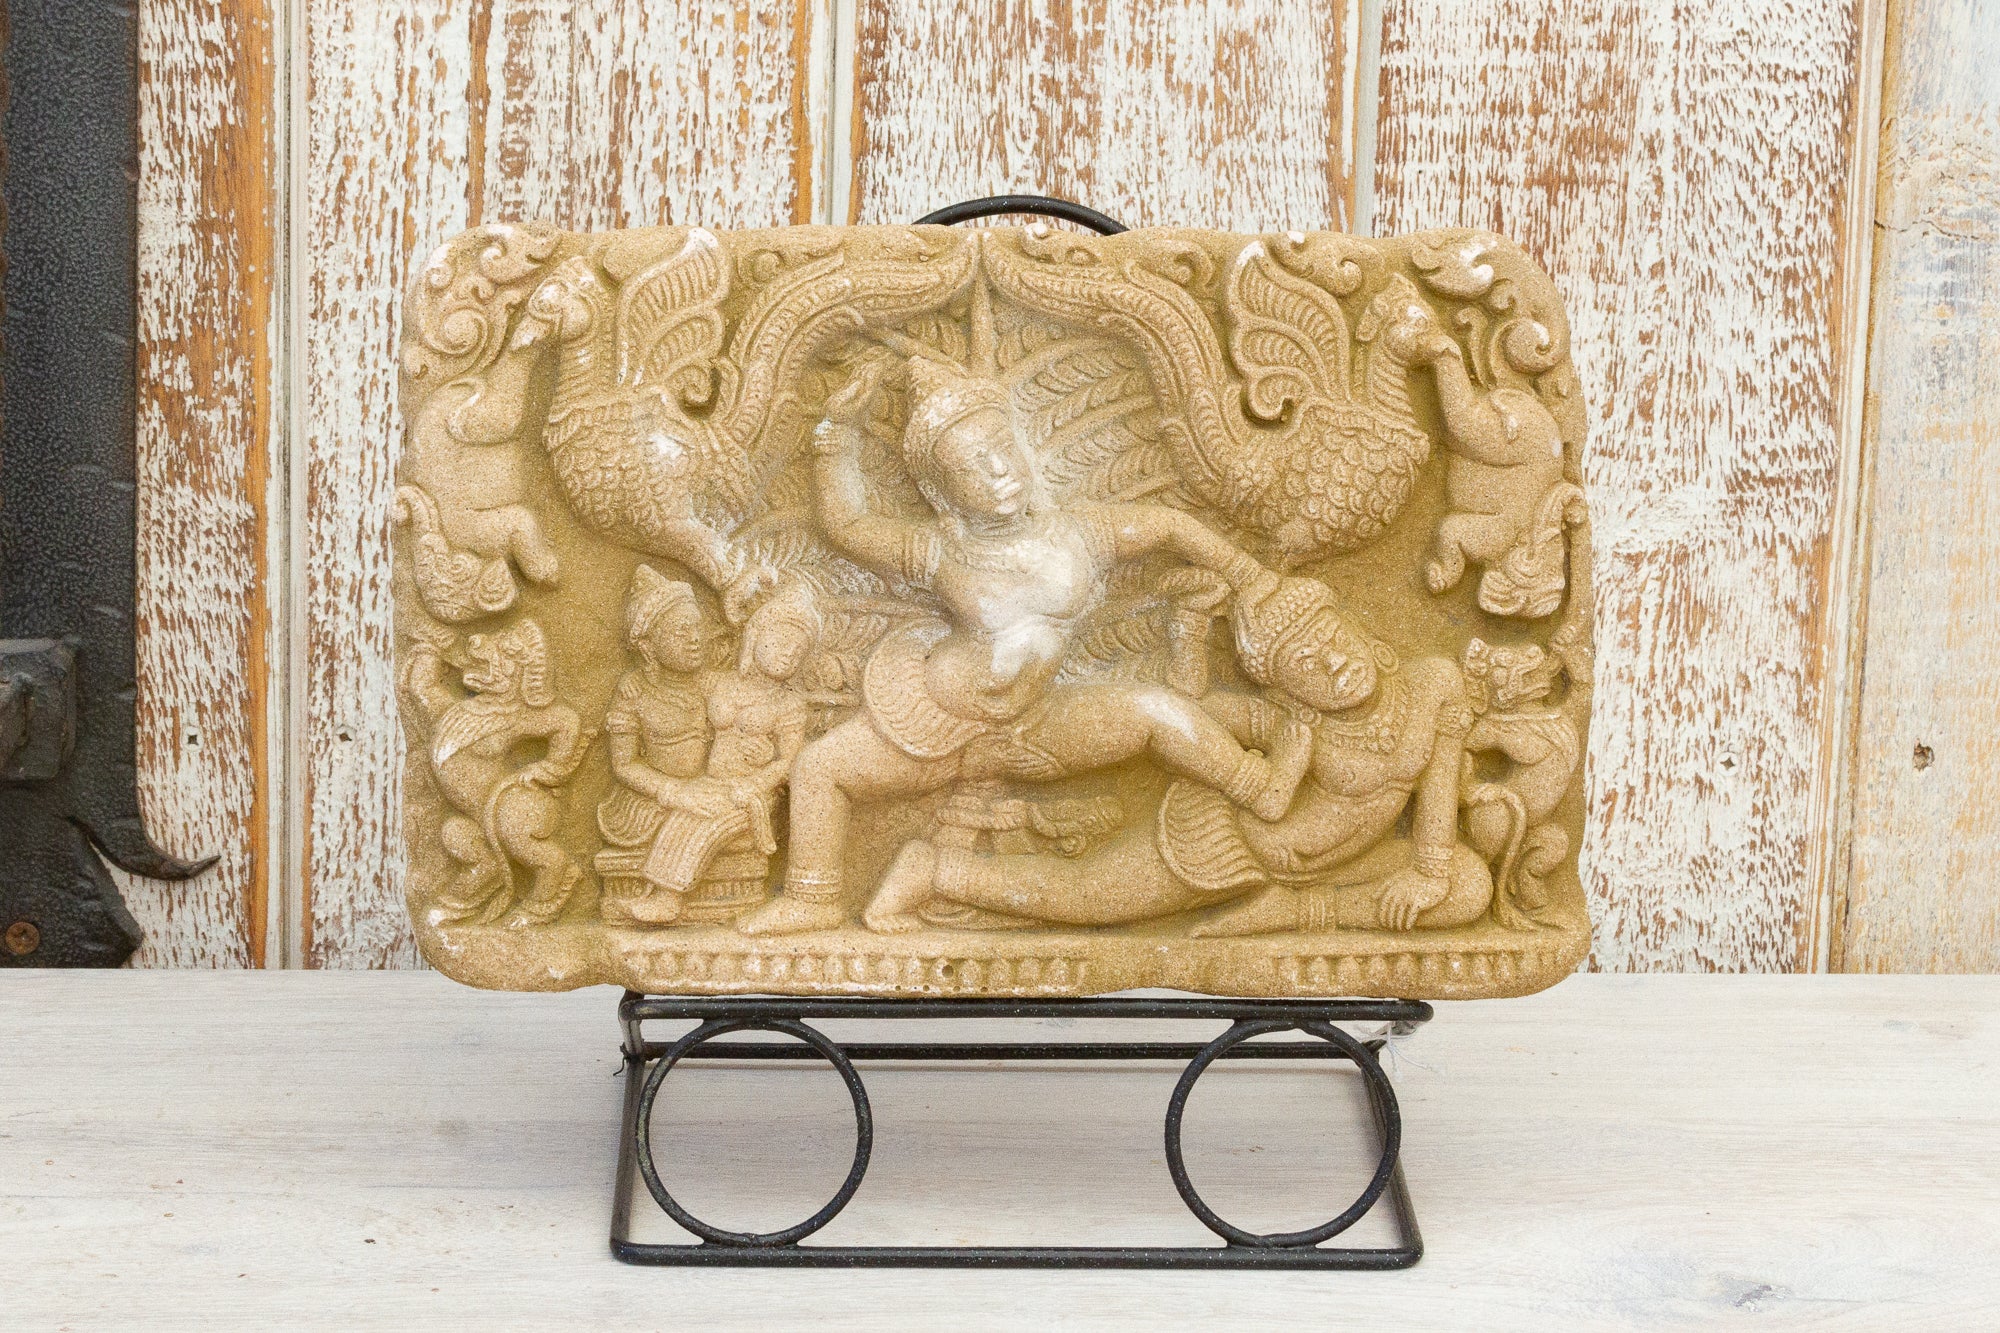 DE-COR | Ispirazione globale, Stele cambogiana in pietra scolpita del tempio di Angkor Wat (commercio)